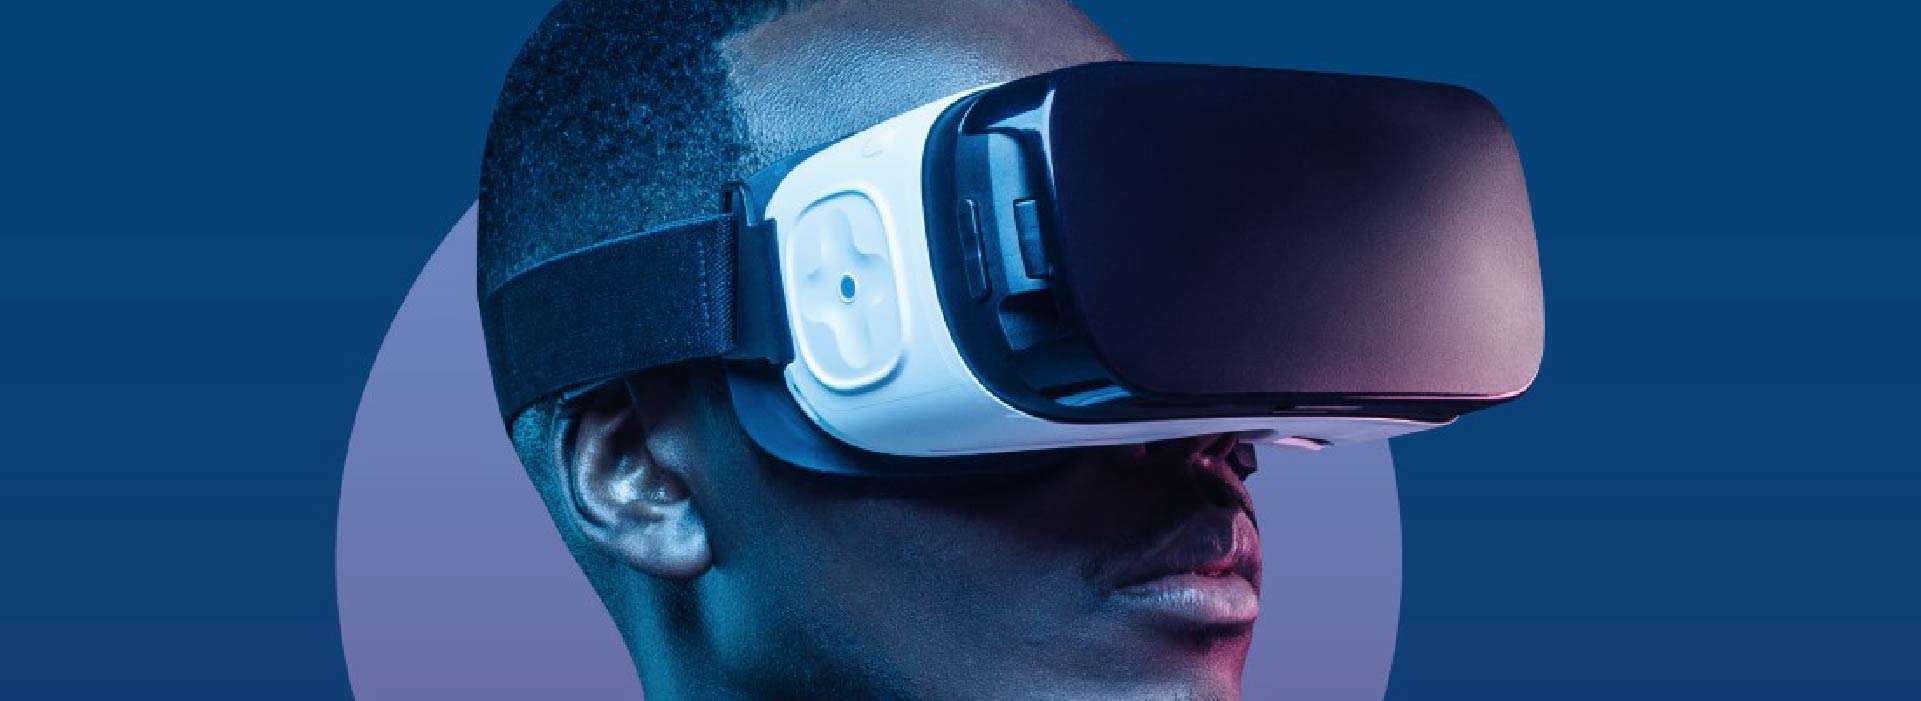 Imagem de um homem utilizando óculos de realidade virtual